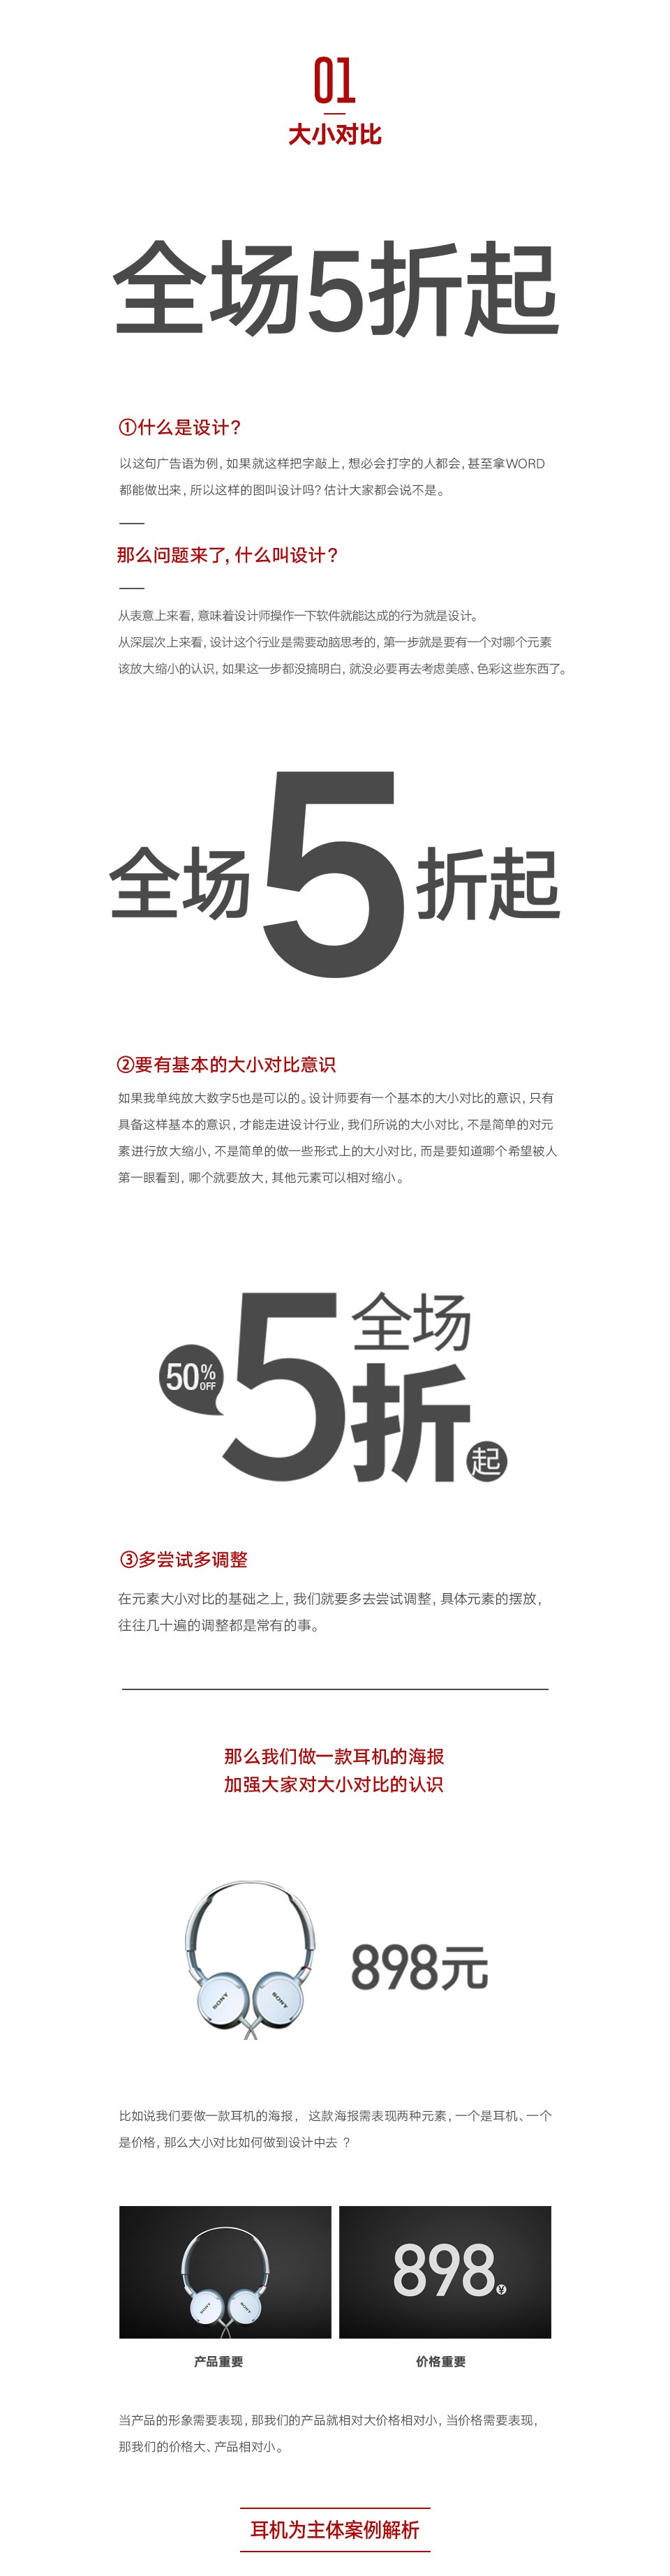 对比技法中常用的八大知识点-北京IMART [16P] (3).jpg